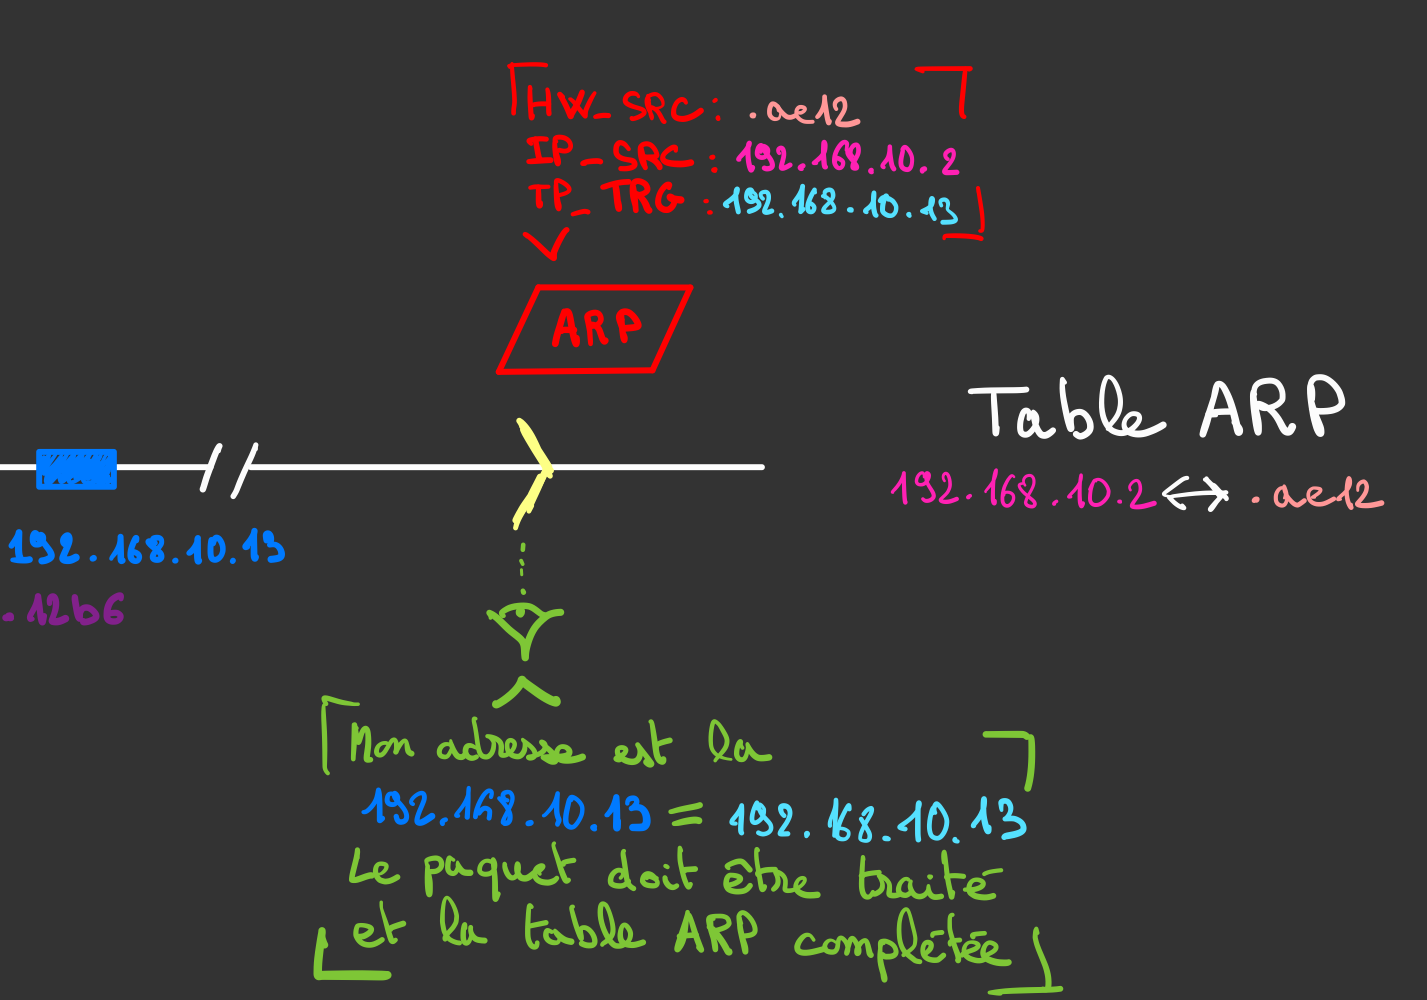 paquet ARP traité et table ARP complétée